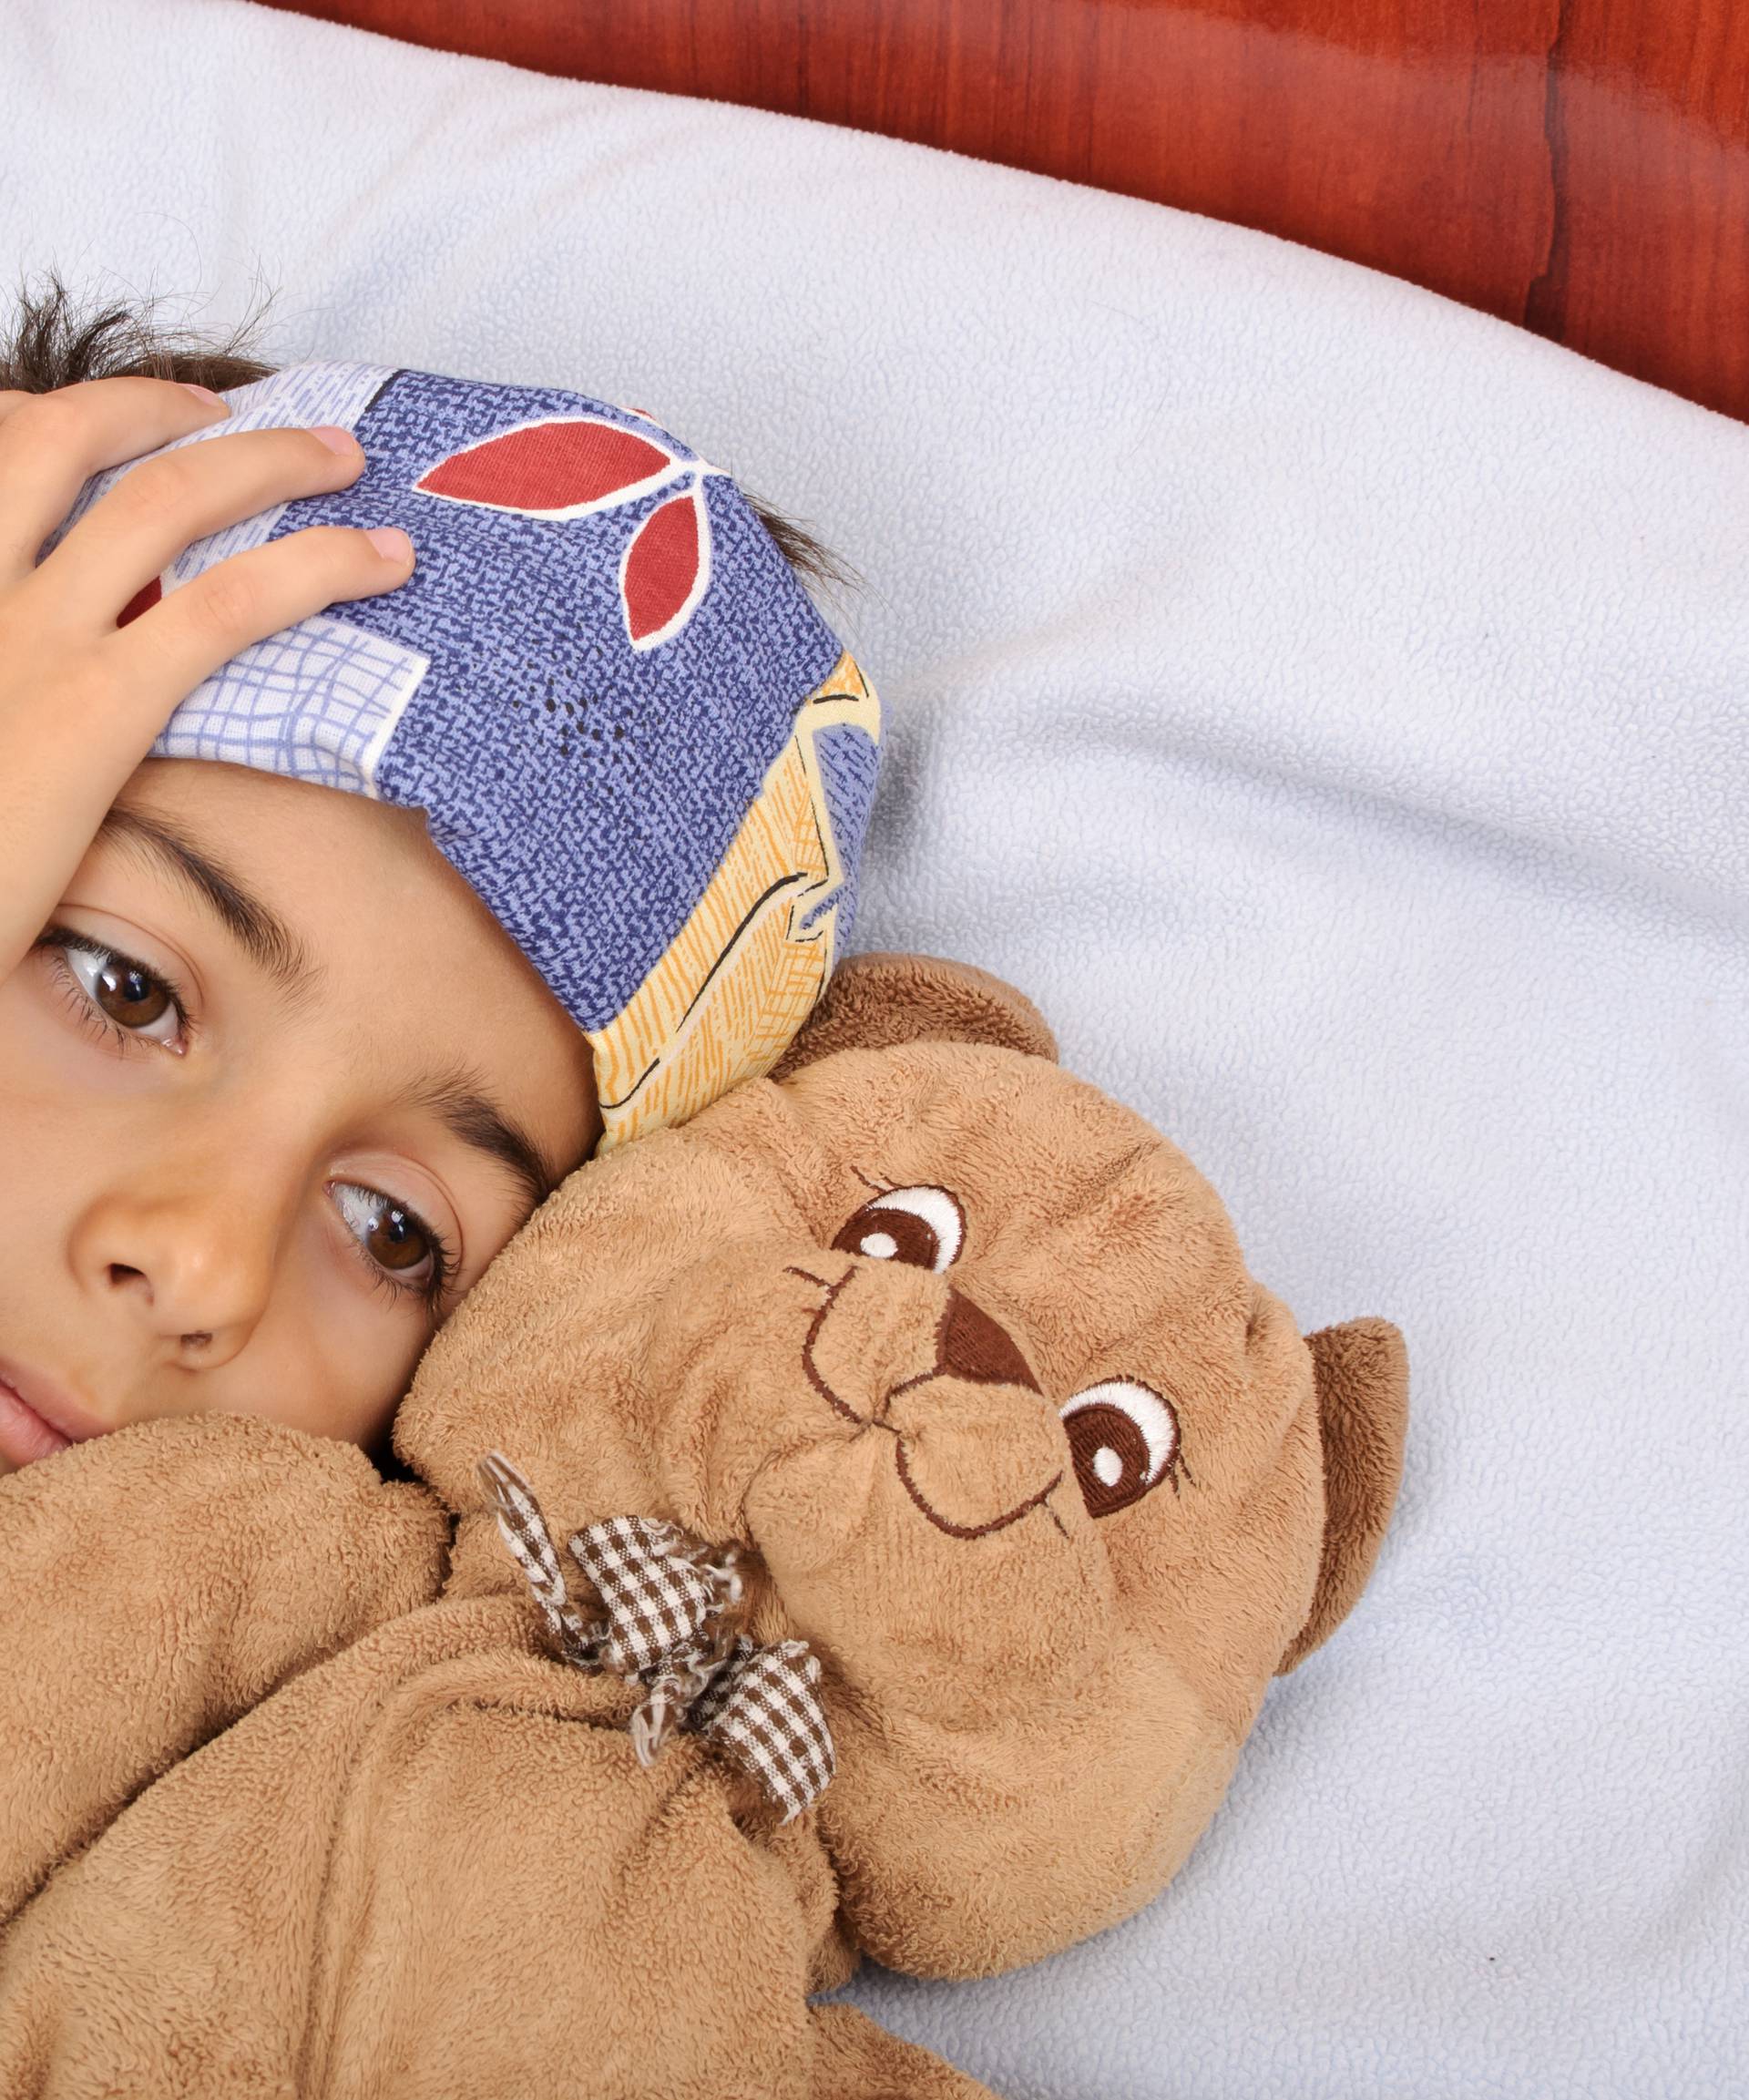 Glavobolja kod djece može biti znak po život opasne bolesti